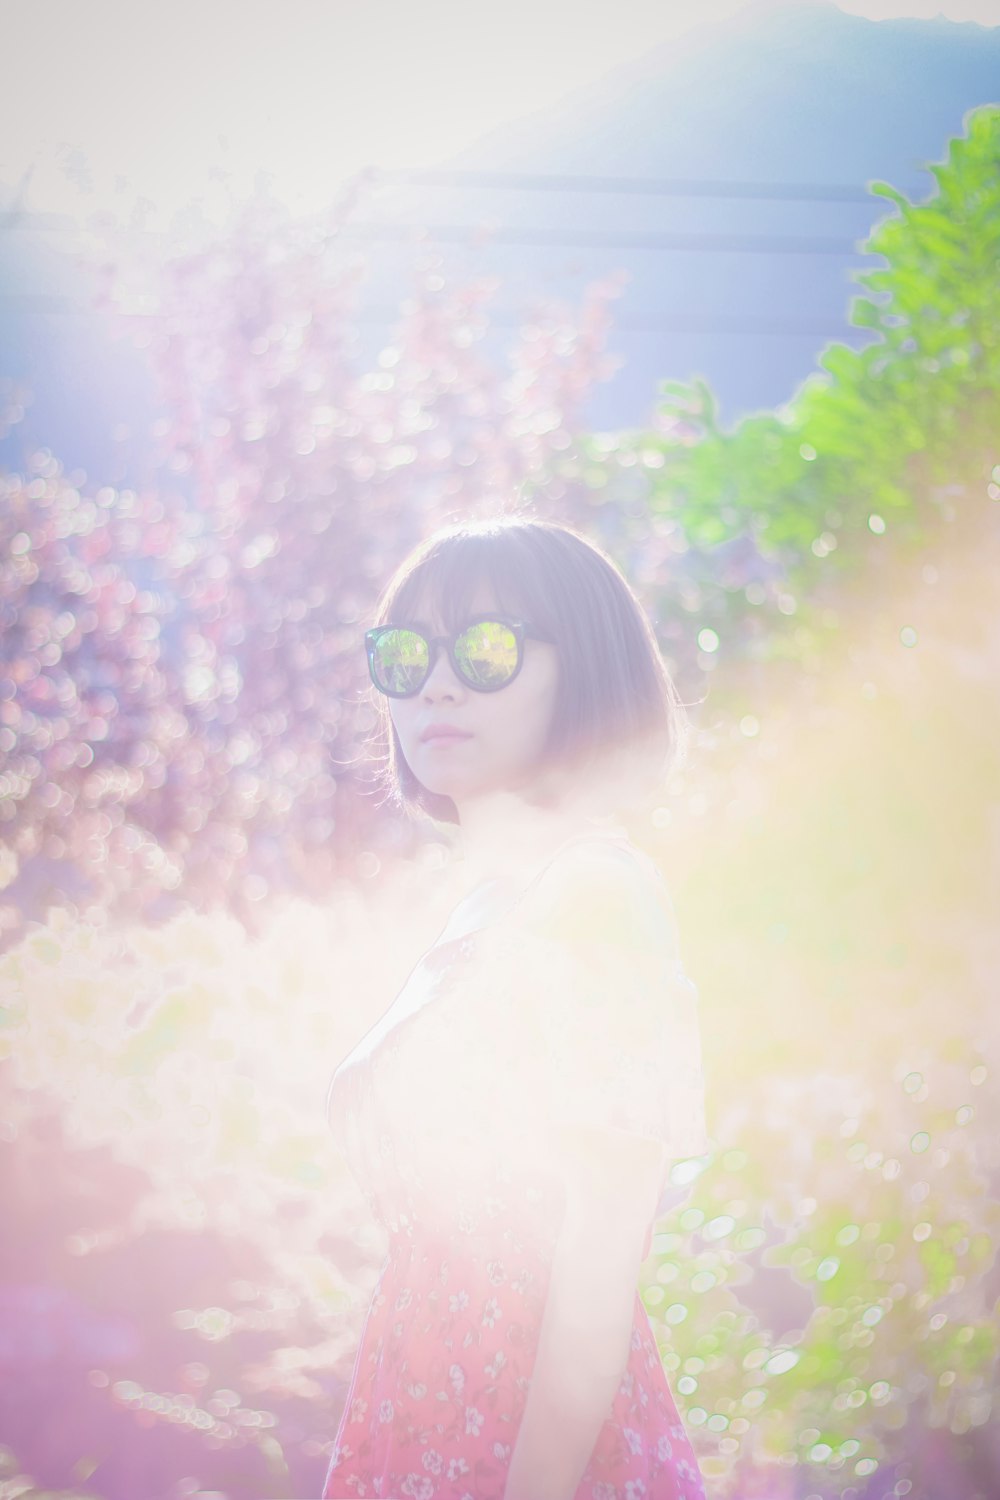 Frau mit Sonnenbrille, während sie in der Nähe von Bäumen steht